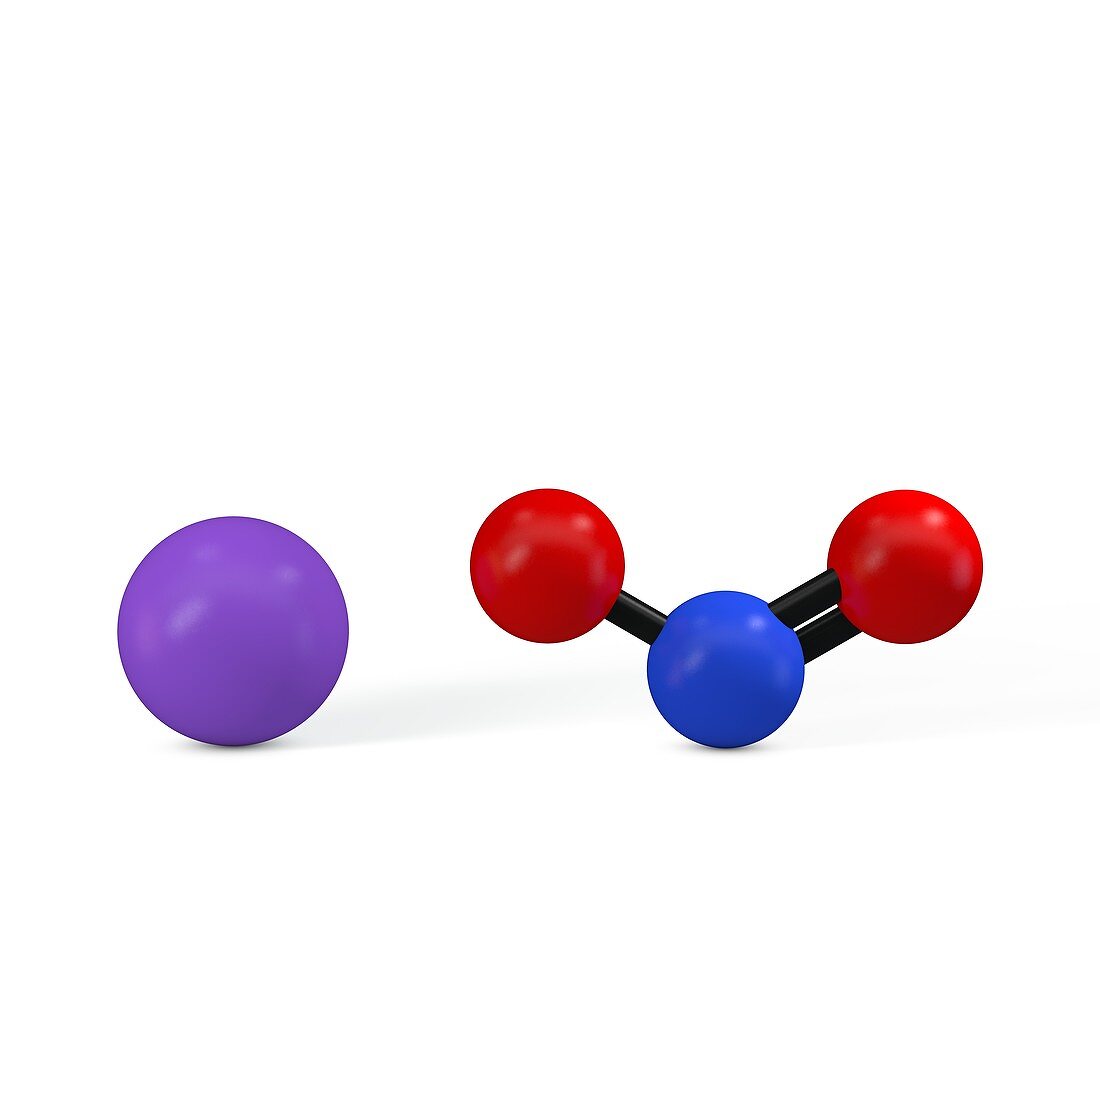 Sodium nitrite molecule, illustration